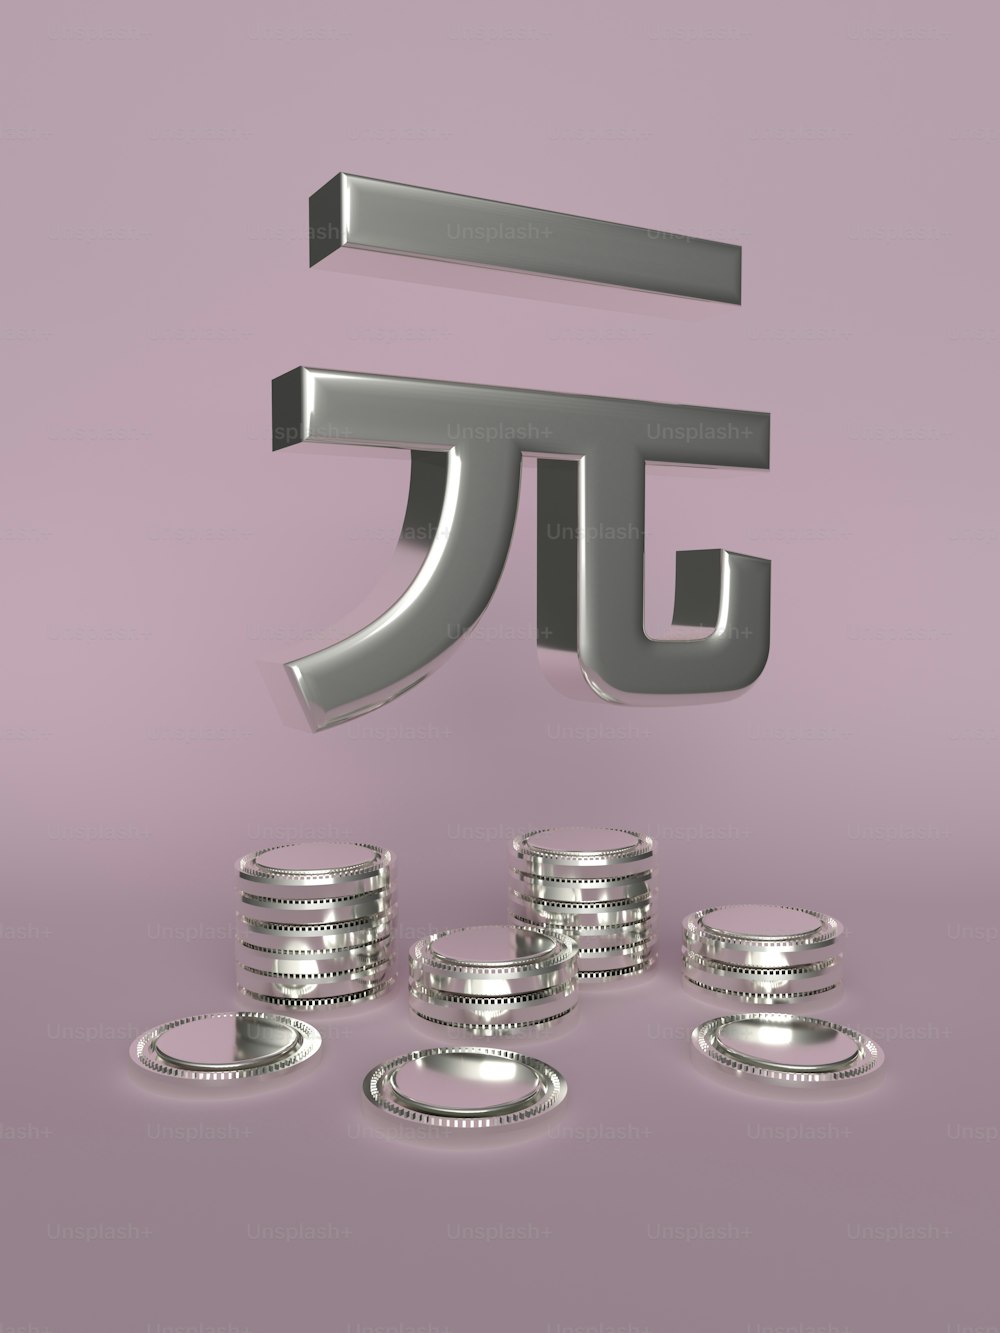 uma pilha de moedas de prata sentadas ao lado de um símbolo pi